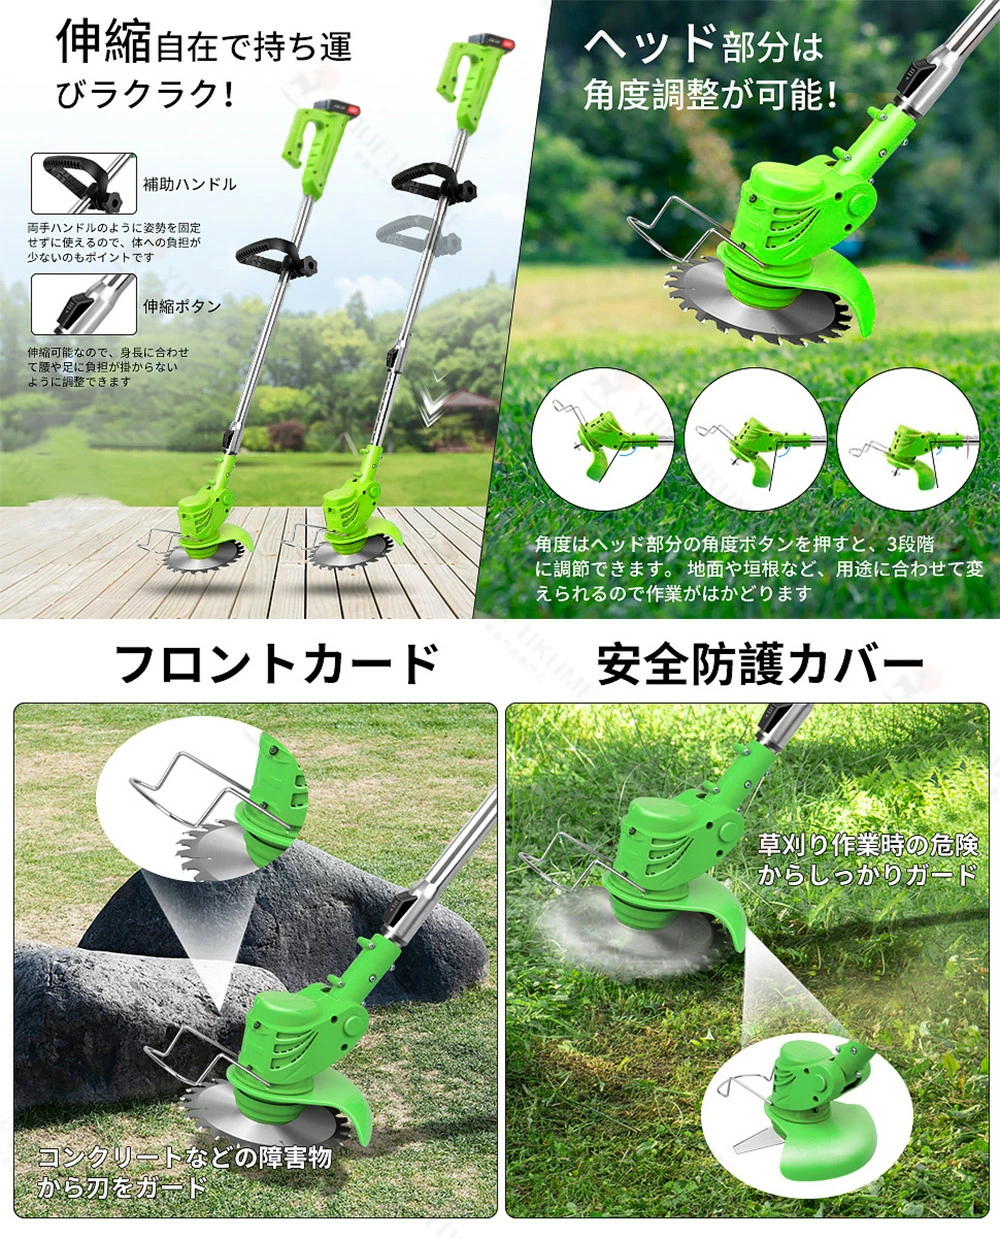 草刈機 充電式 コードレス最新型 電動 草刈り機 伸縮式 コードレス 替